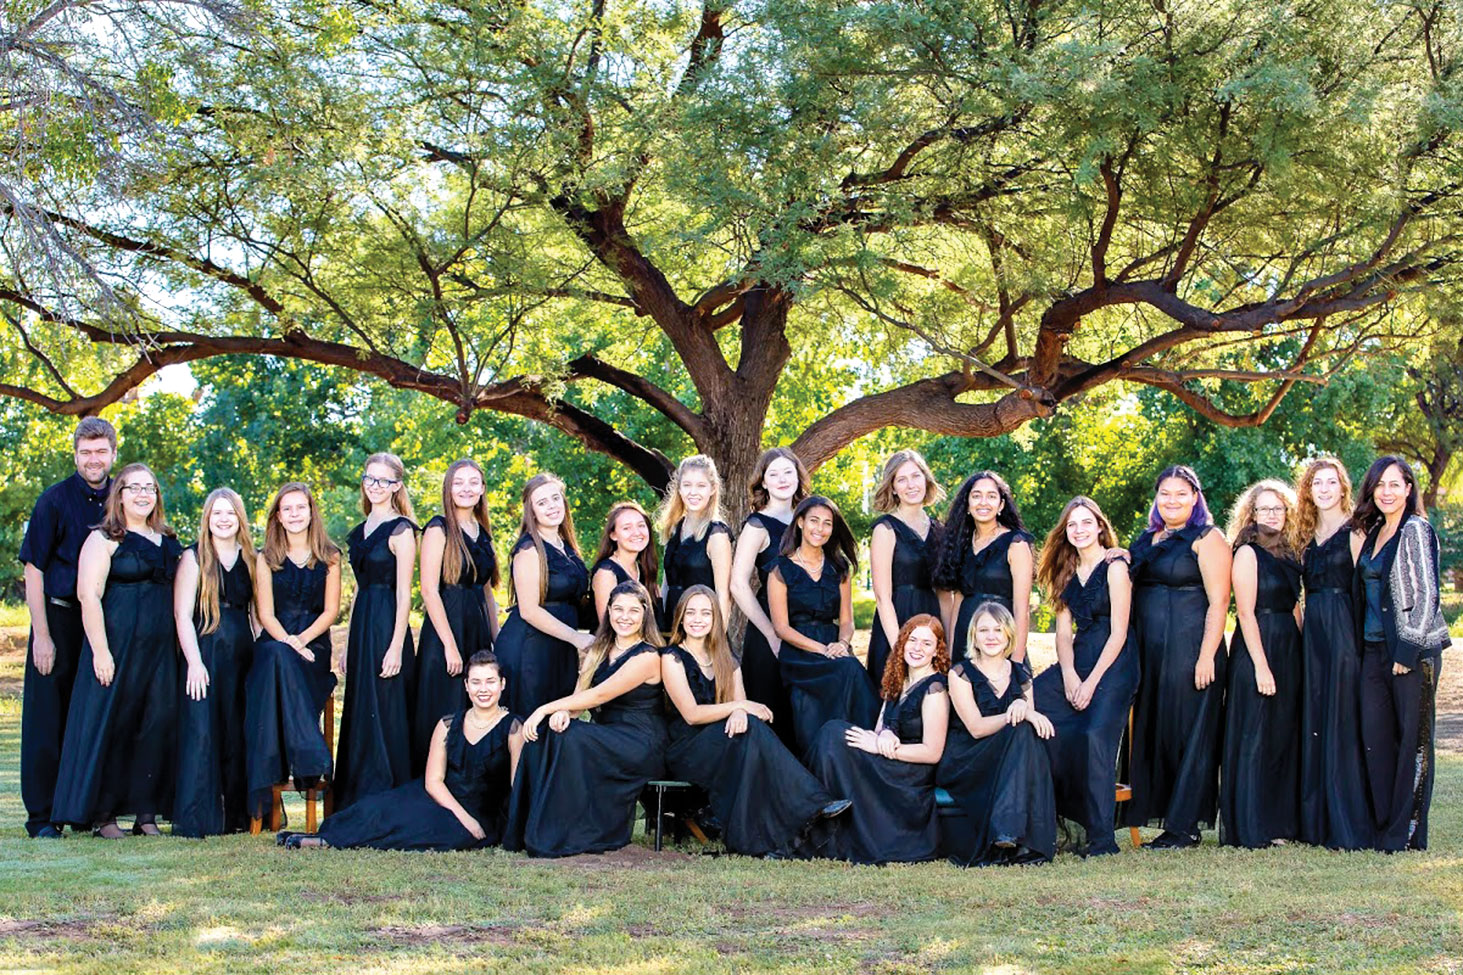 The Tucson Girls Chorus